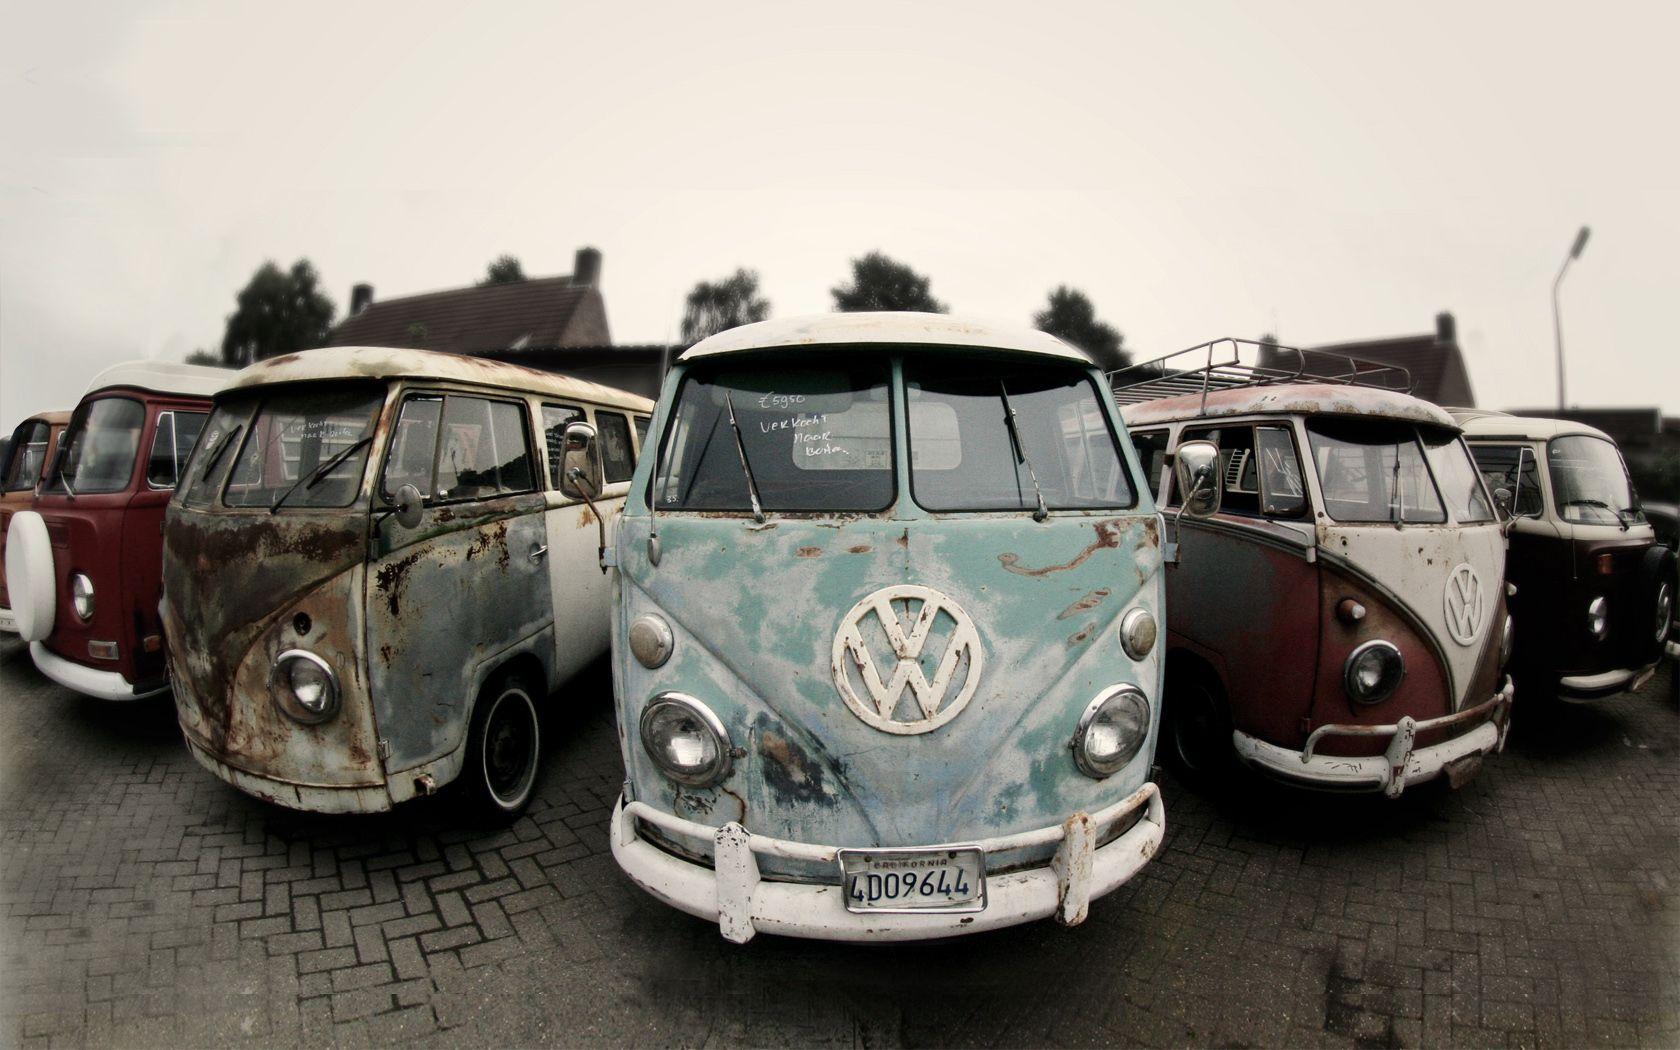 Volkswagen Bus Wallpaper For iPhone #cdz. Cars